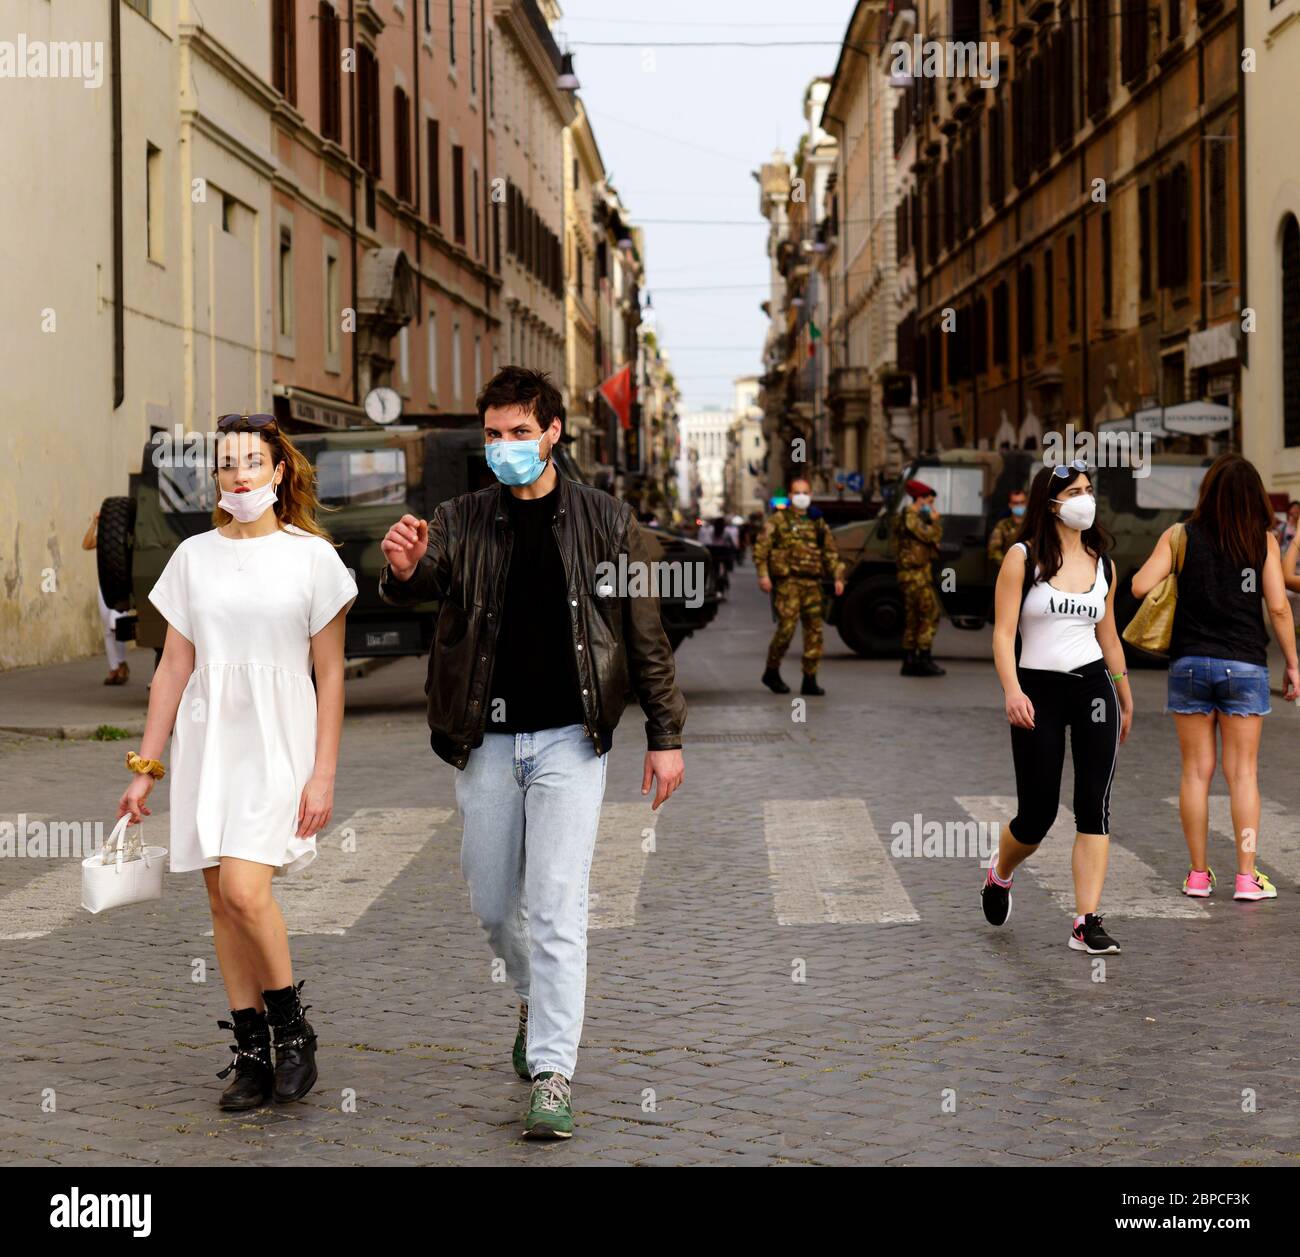 Pareja joven con máscaras médicas caminando en el centro de Roma durante la fase 1 del coronavirus Covid 19. Furgonetas del ejército con patrullas militares en el fondo. Italia, Europa, Unión Europea, UE. Foto de stock